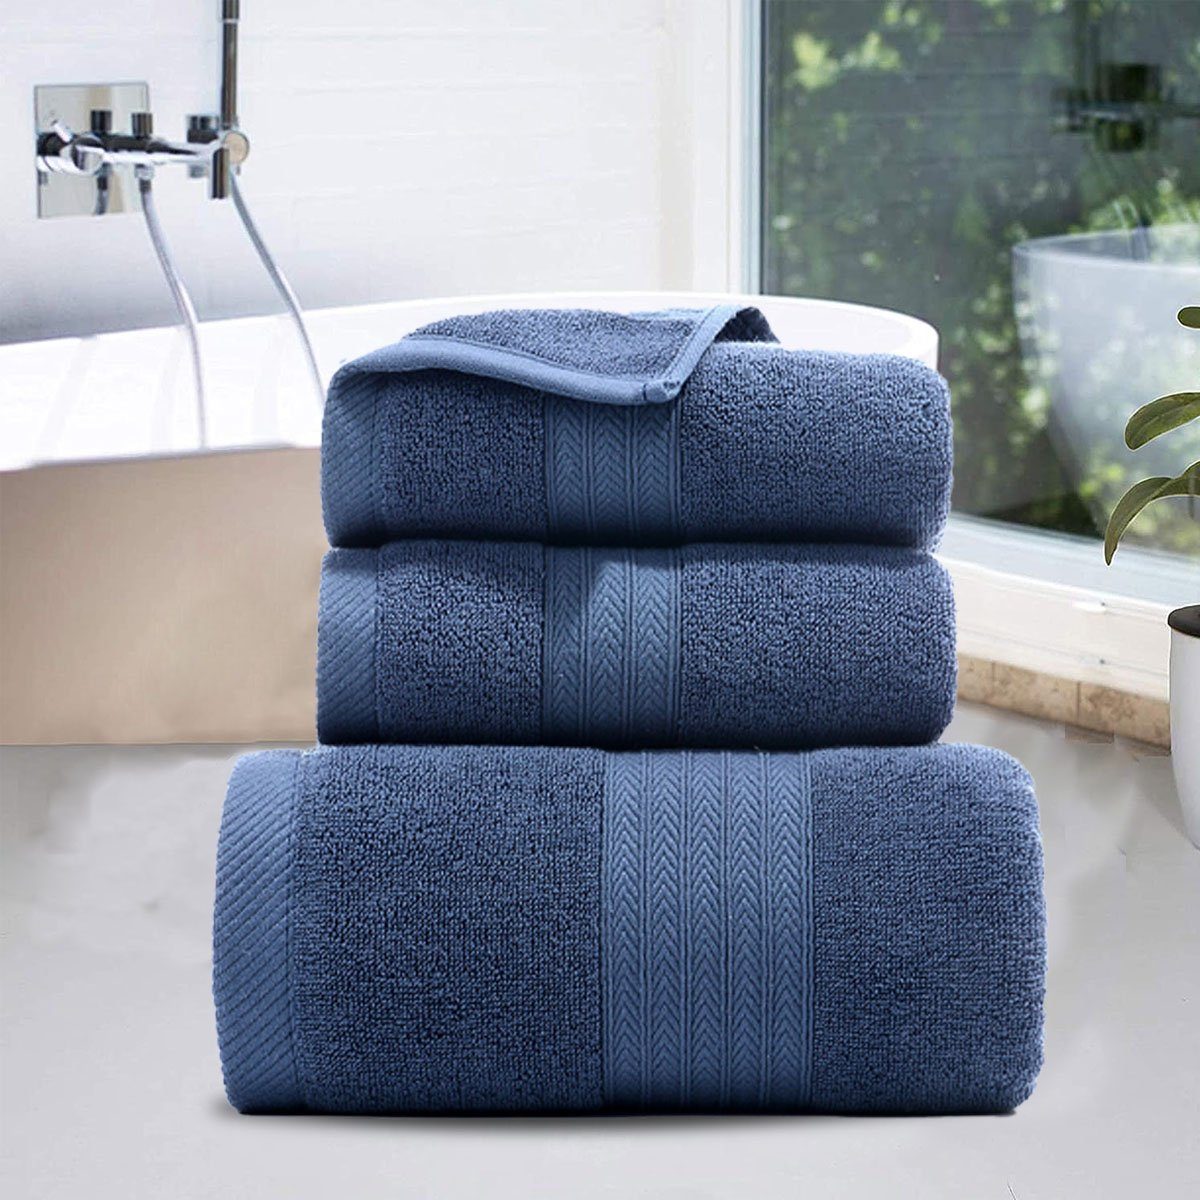 Jormftte Handtuch Set Handtücher Set-2xHandtuch,1xBadetuch,saugfähig und zu Blau weich,für Hause